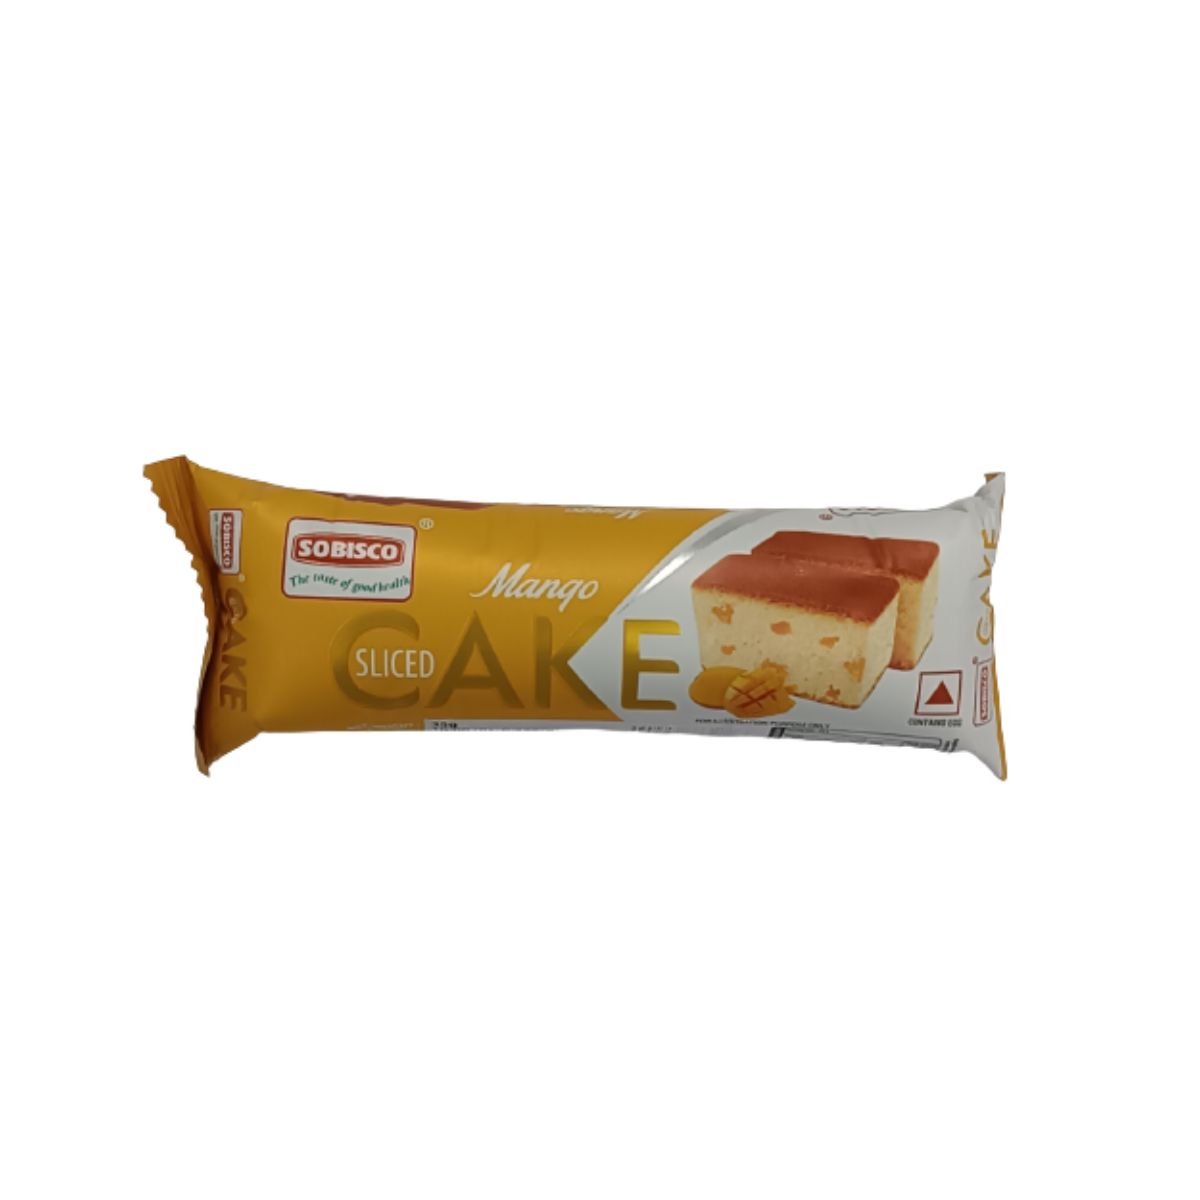 Sobisco Slice Cake - Mango - 35g